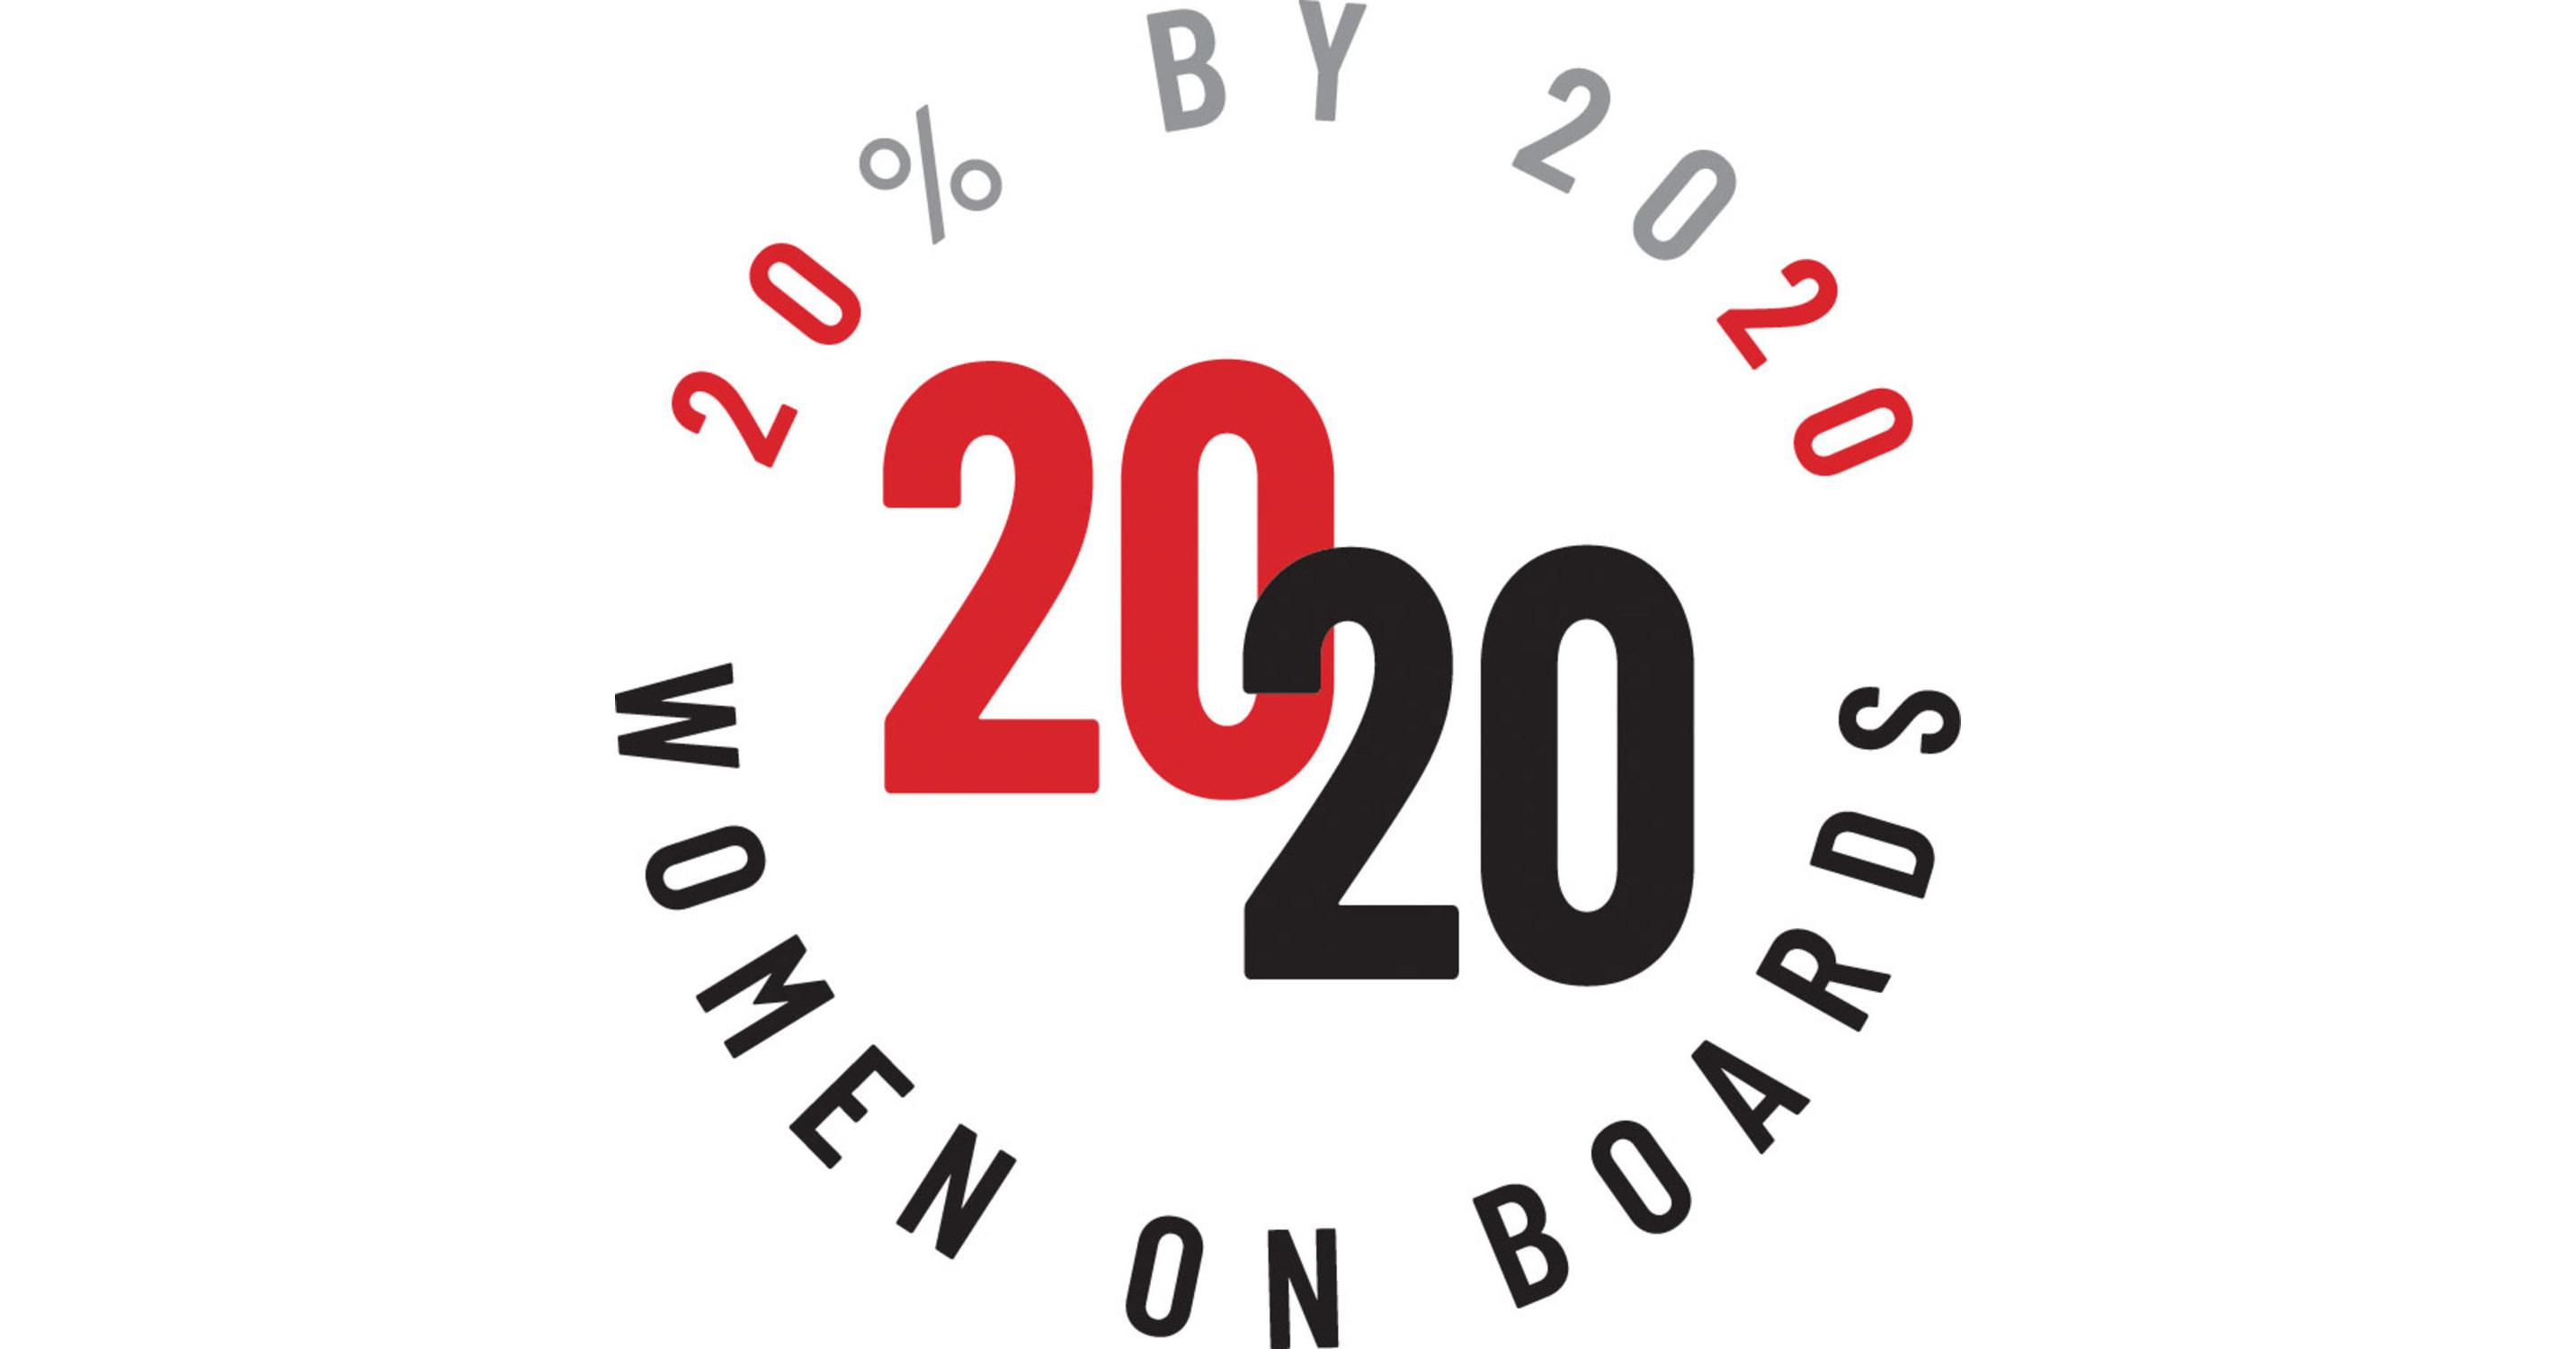 _women_on_boards_logo